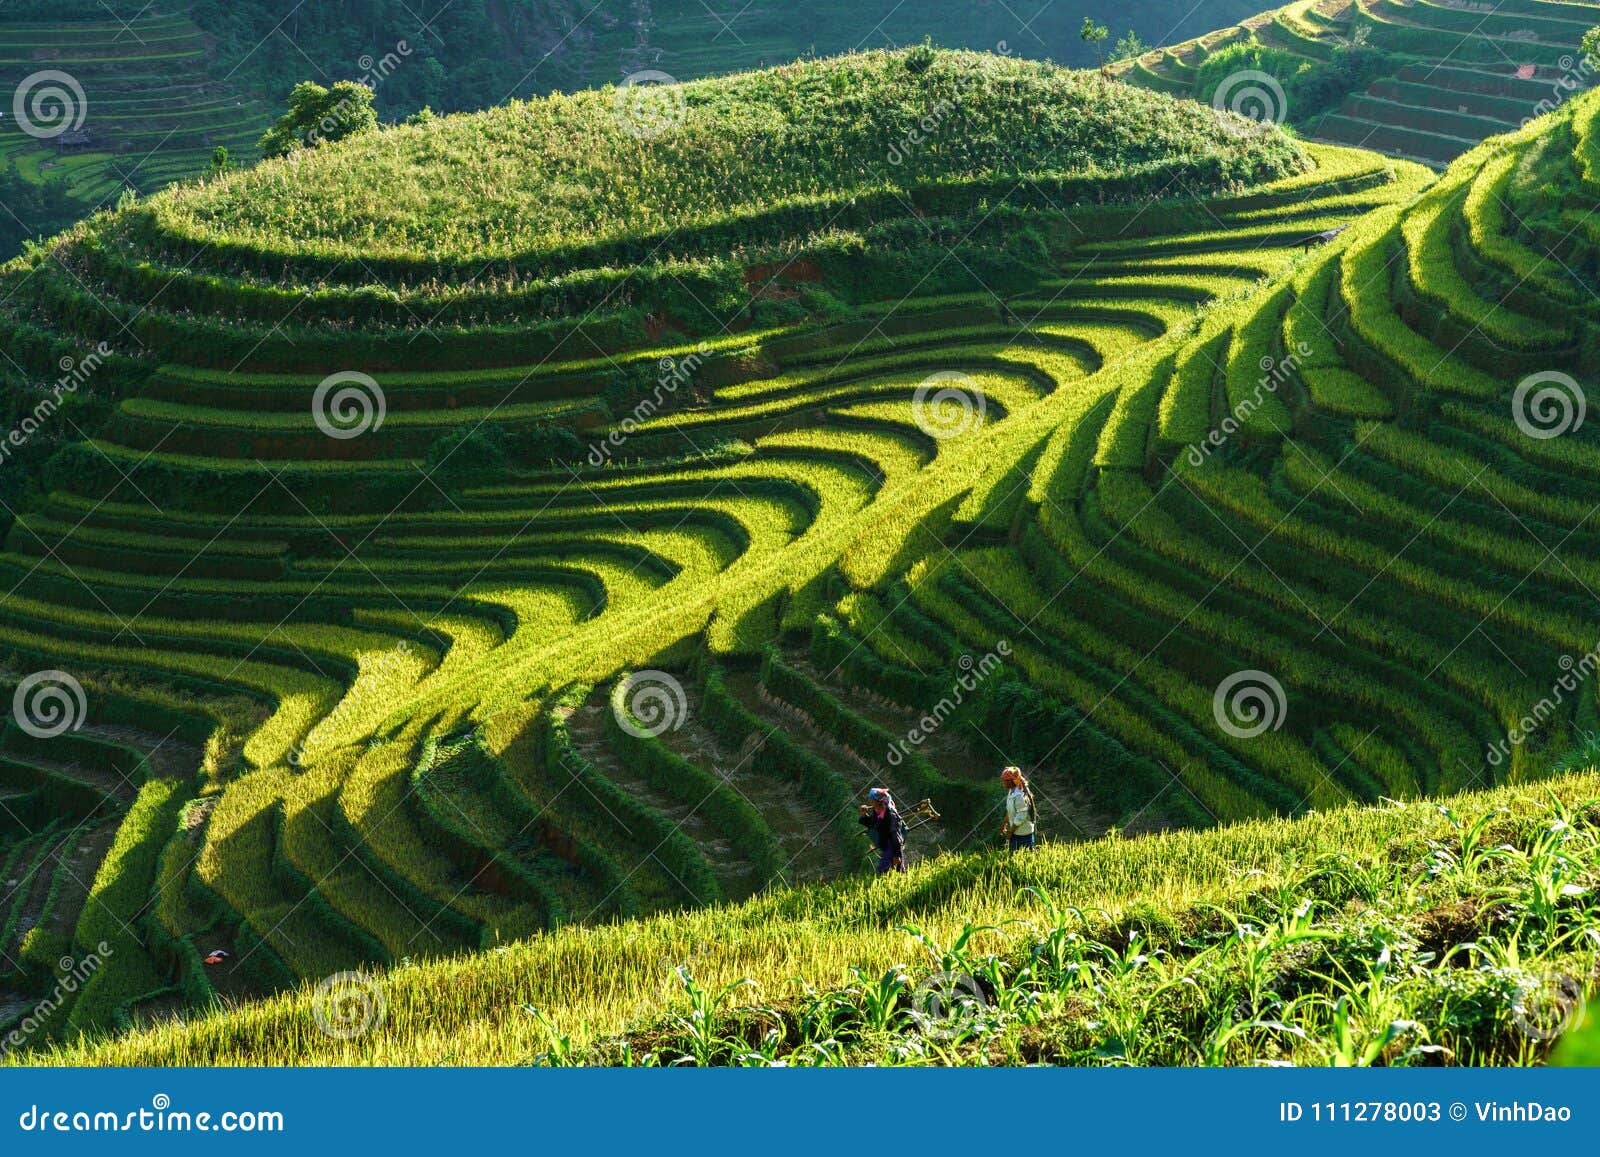 Γεν Bai, Βιετνάμ - 18 Σεπτεμβρίου 2017: Terraced τομέας ρυζιού στην εποχή συγκομιδών με τις γυναίκες εθνικής μειονότητας στον τομέα στη MU Cang Chai, Βιετνάμ